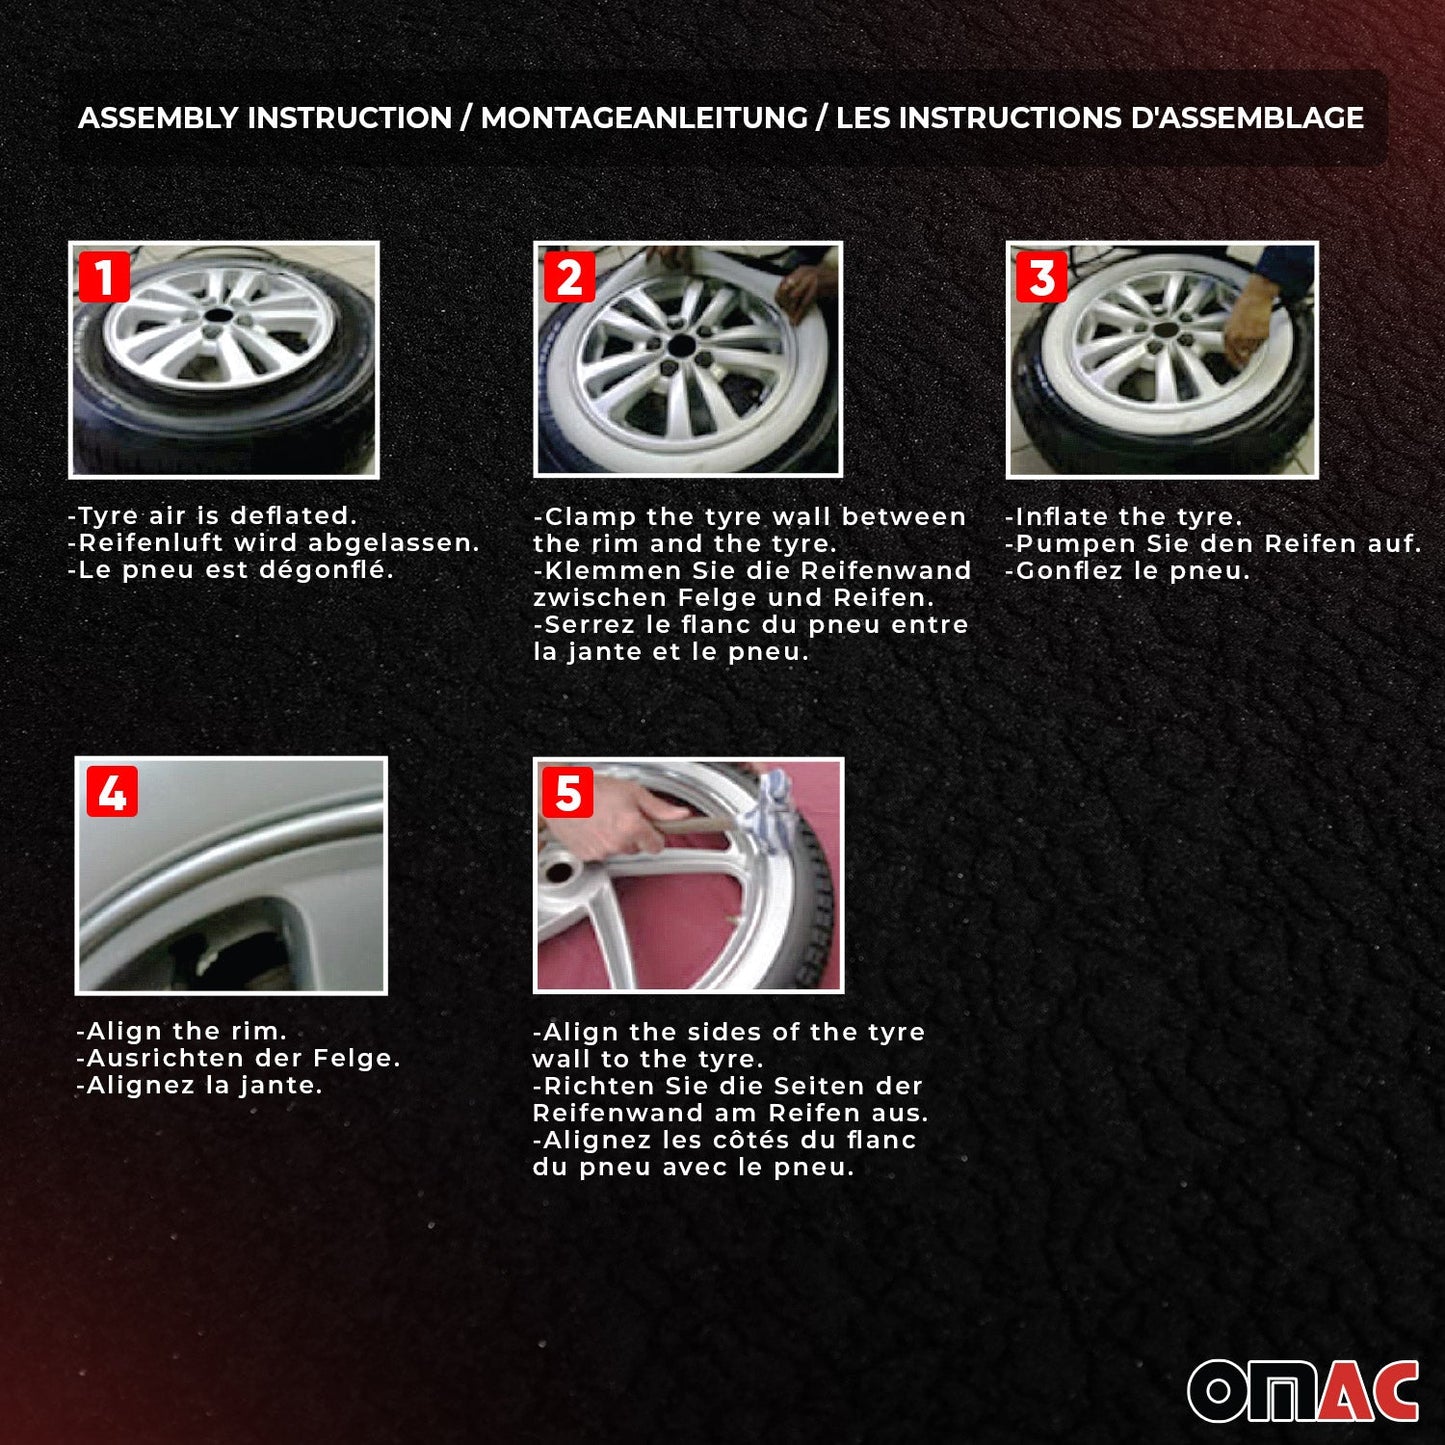 OMAC 15" Tire Wall For Honda Band Portawall Rims Sidewall Rubber Ring Set White 4x U023824